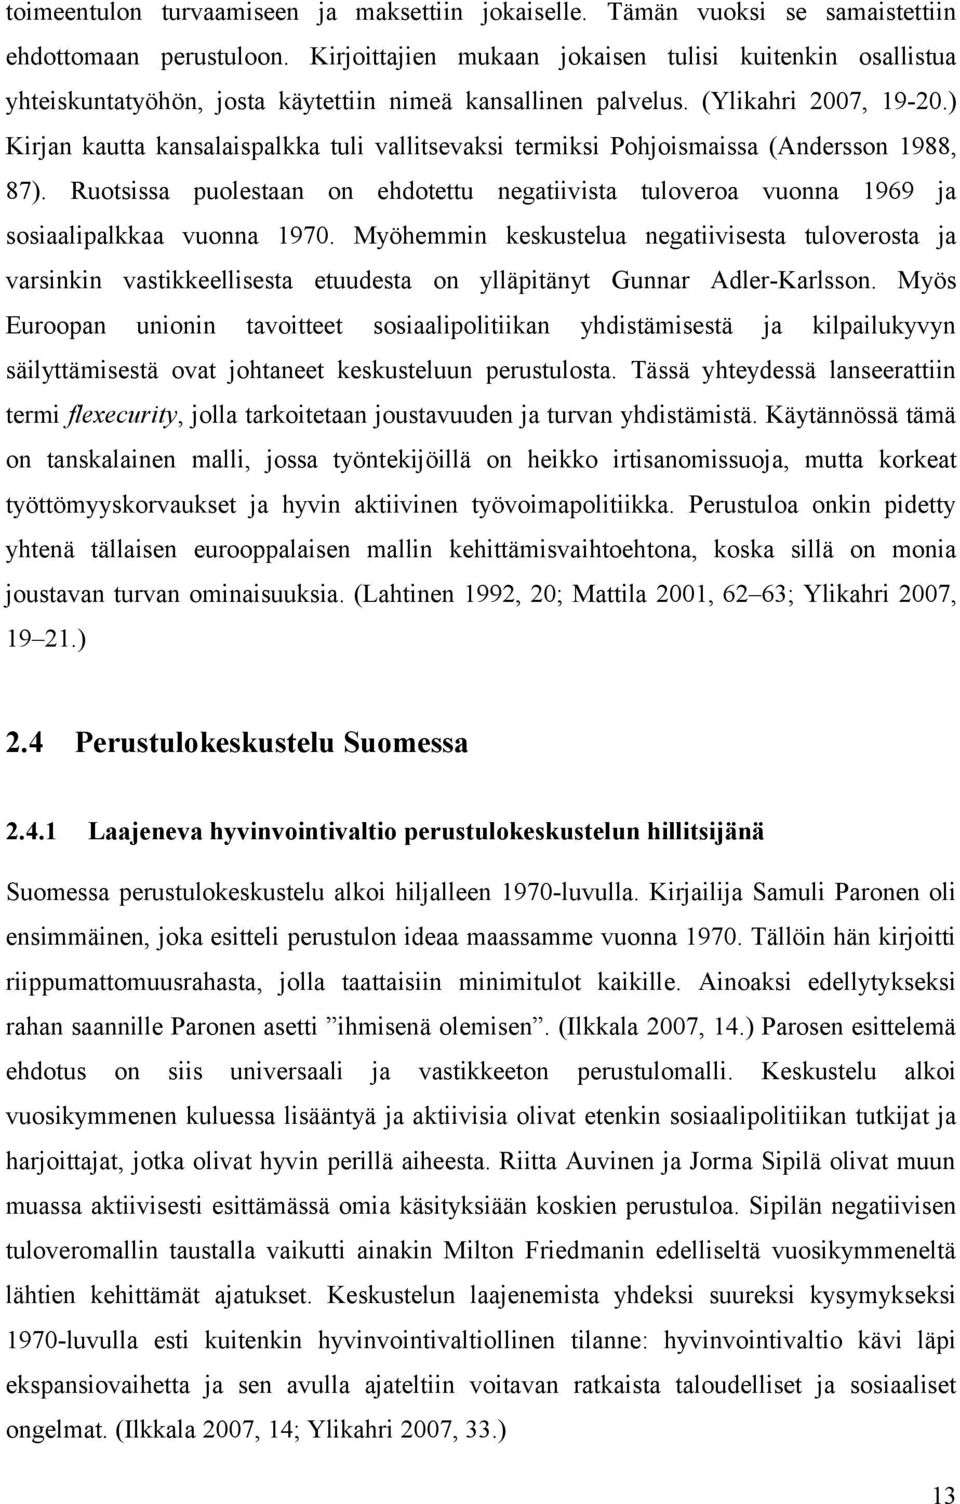 ) Kirjan kautta kansalaispalkka tuli vallitsevaksi termiksi Pohjoismaissa (Andersson 1988, 87). Ruotsissa puolestaan on ehdotettu negatiivista tuloveroa vuonna 1969 ja sosiaalipalkkaa vuonna 1970.